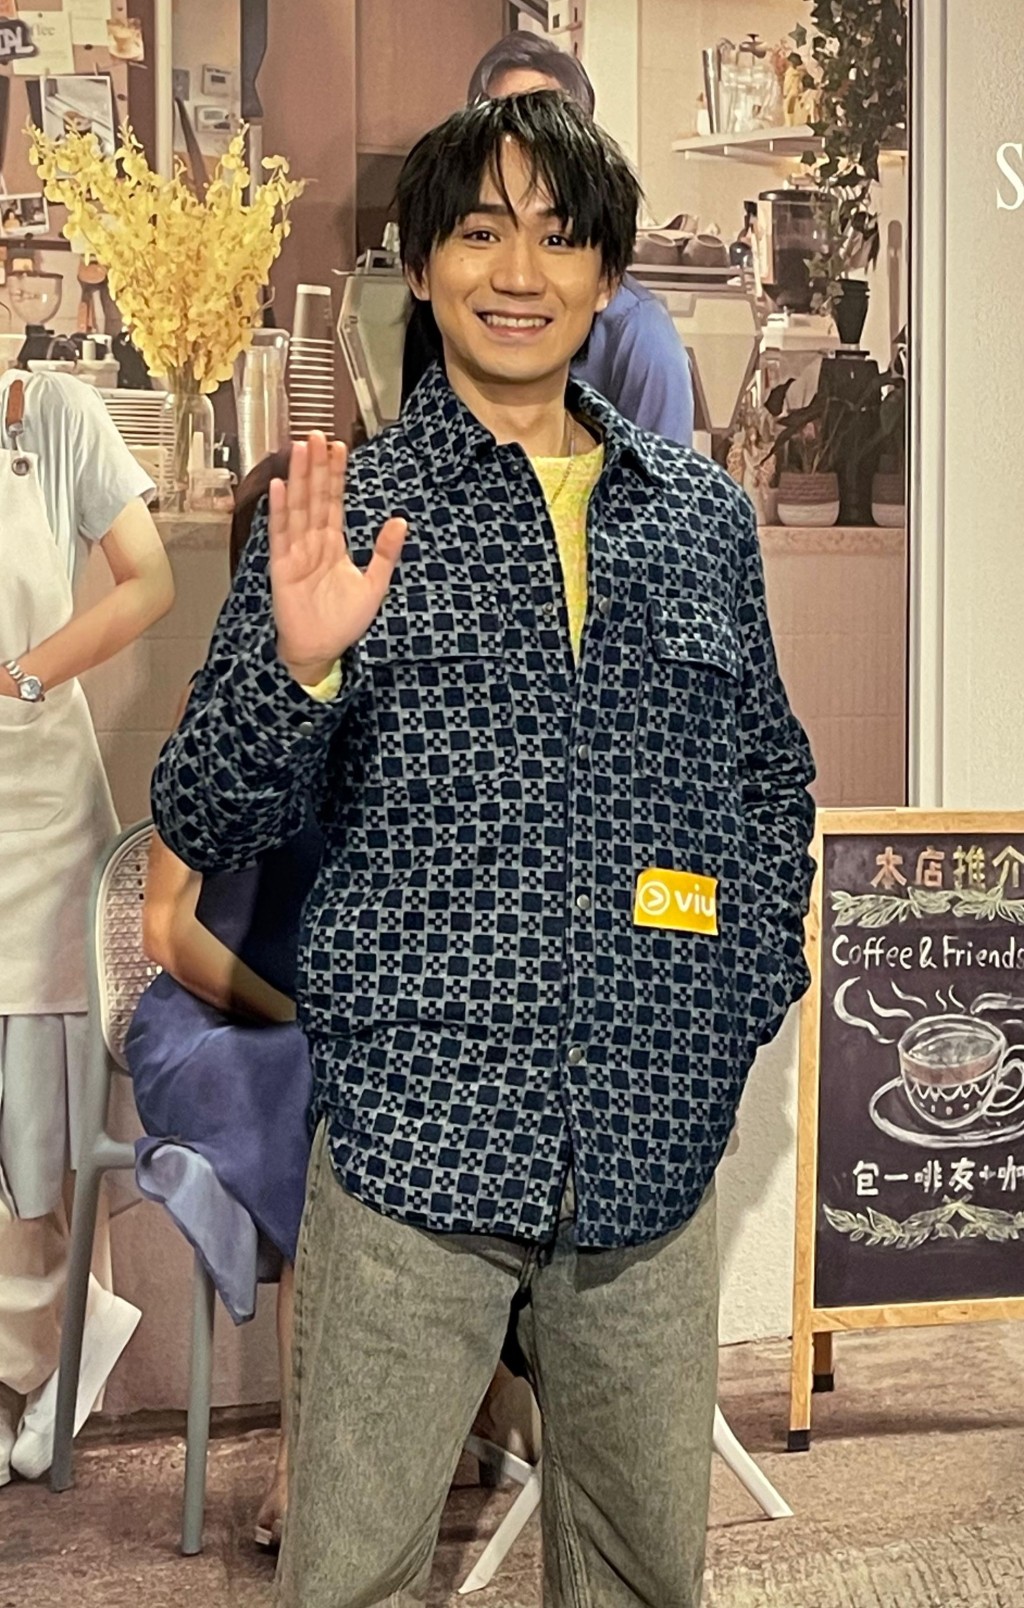 吴肇轩在戏中饰演「分手大师」专帮人分手。